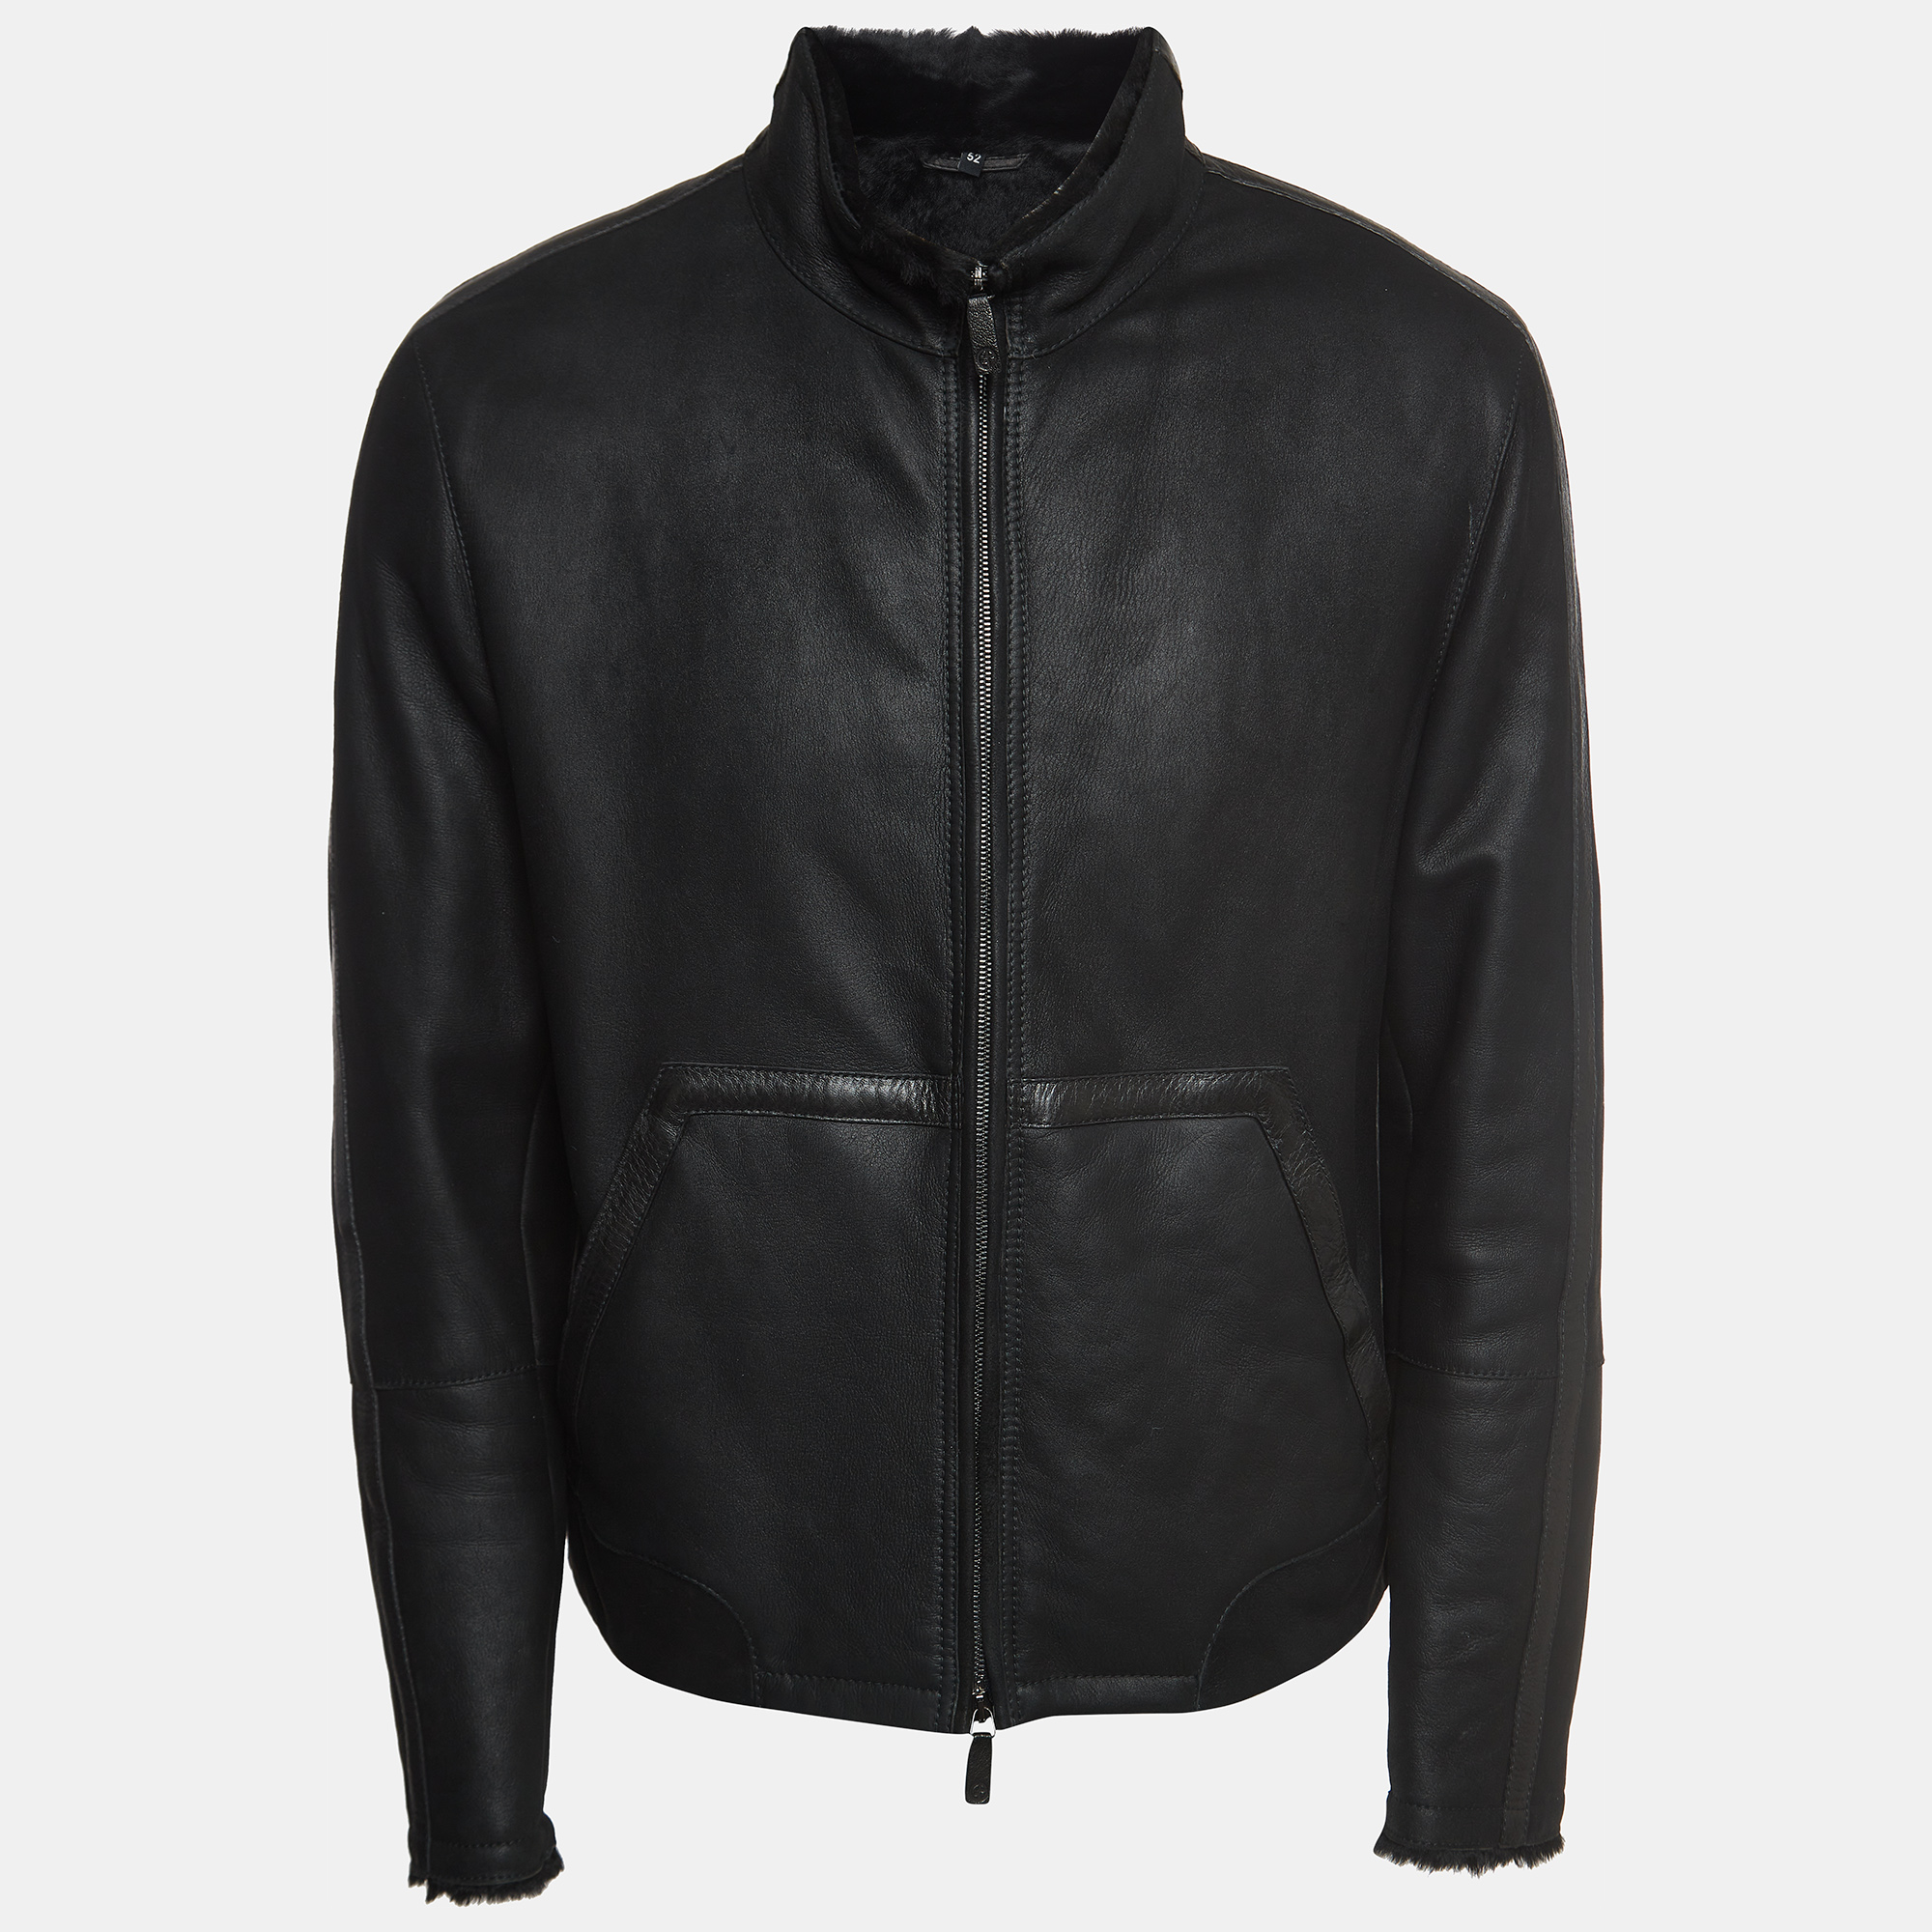 

Giorgio Armani Black Leather and Fur Zipper Jacket